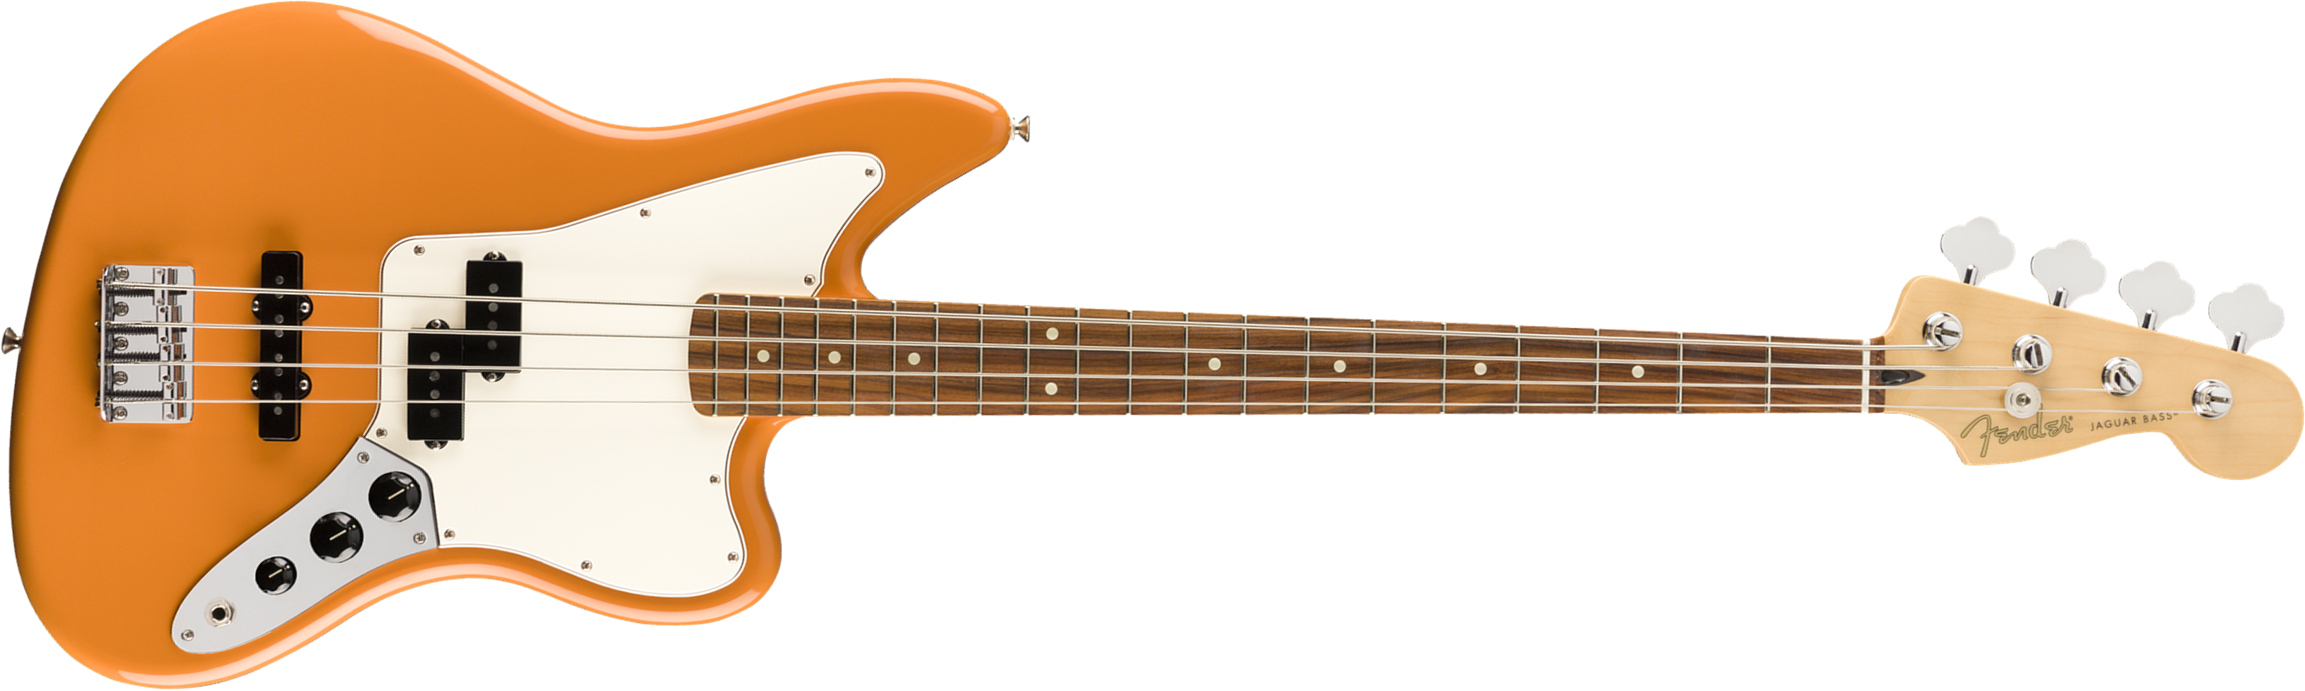 Fender Jaguar Bass Player Mex Mn - Capri Orange - Bajo eléctrico de cuerpo sólido - Main picture